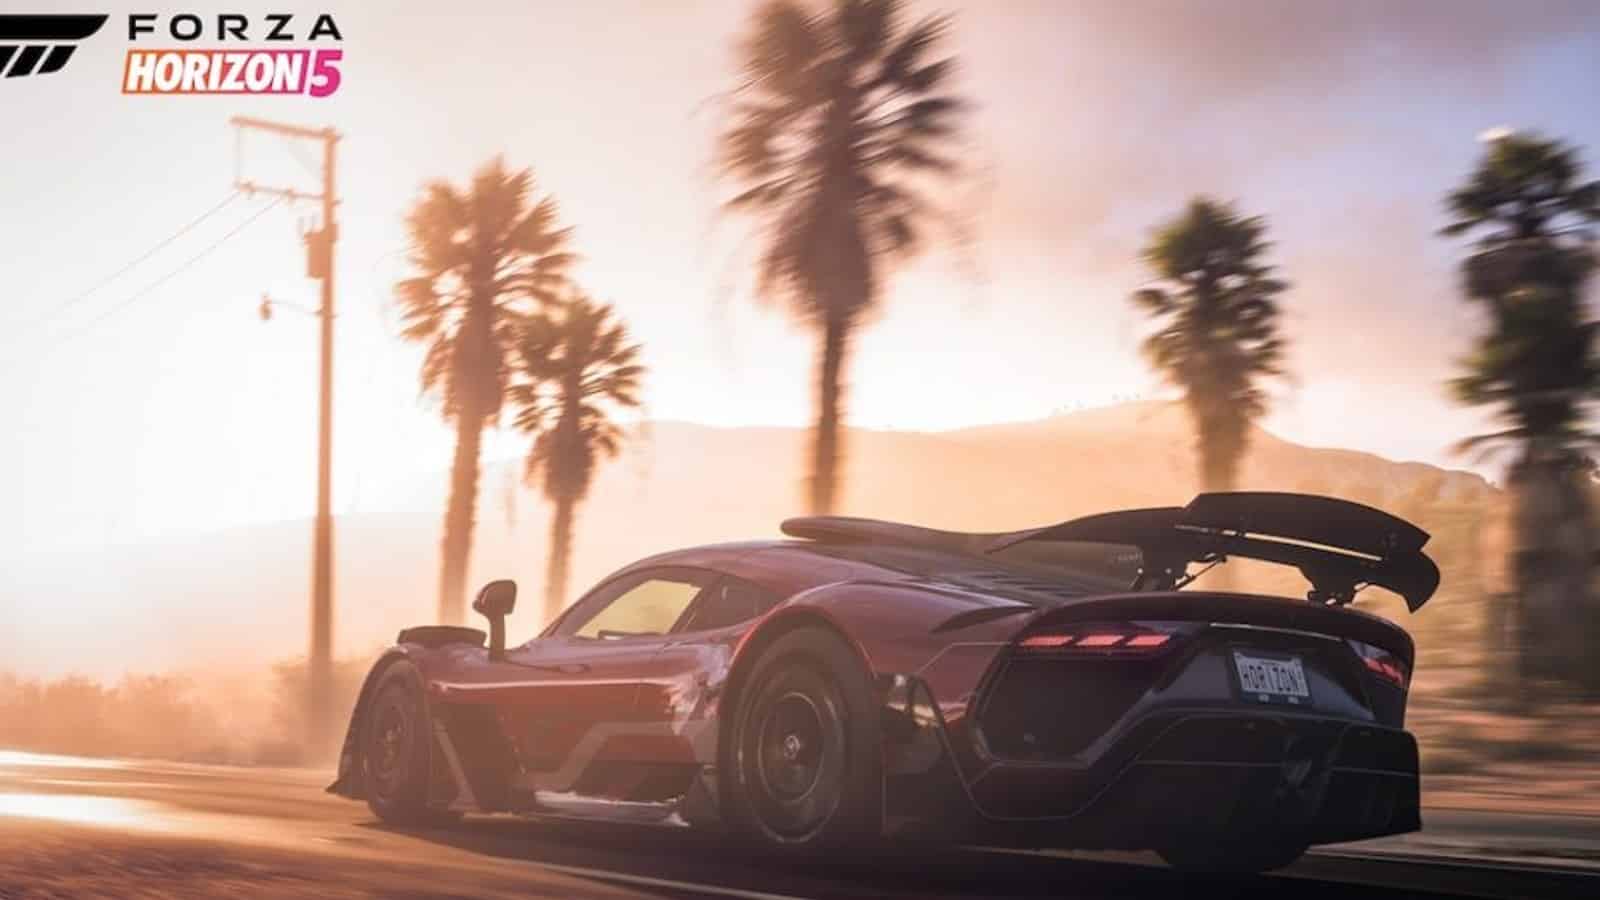 Forza Horizon 5 screenshot showing a car driving